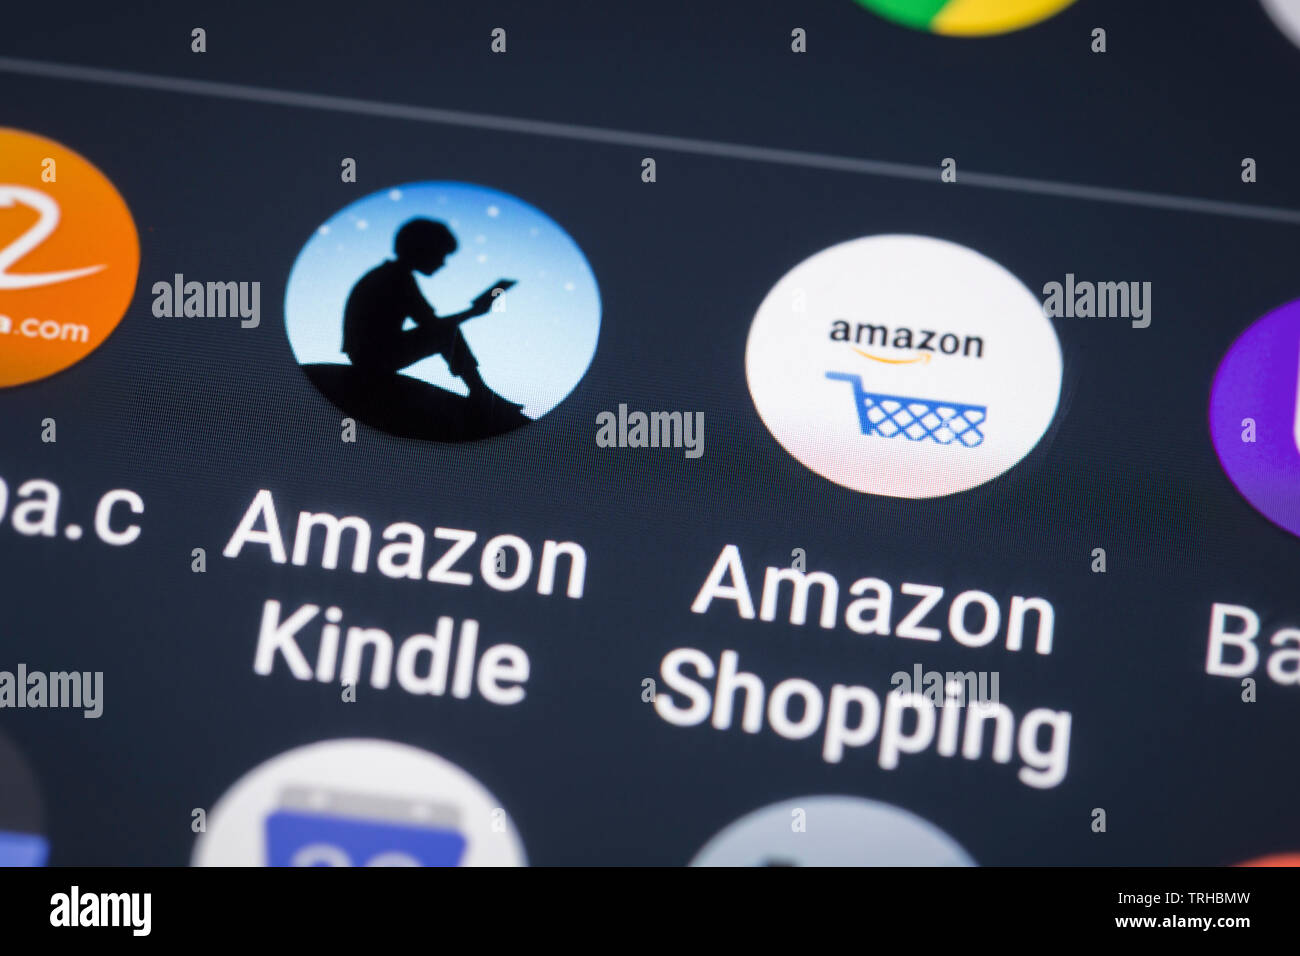 Amazon logos icon on mobile phone screen Stock Photo